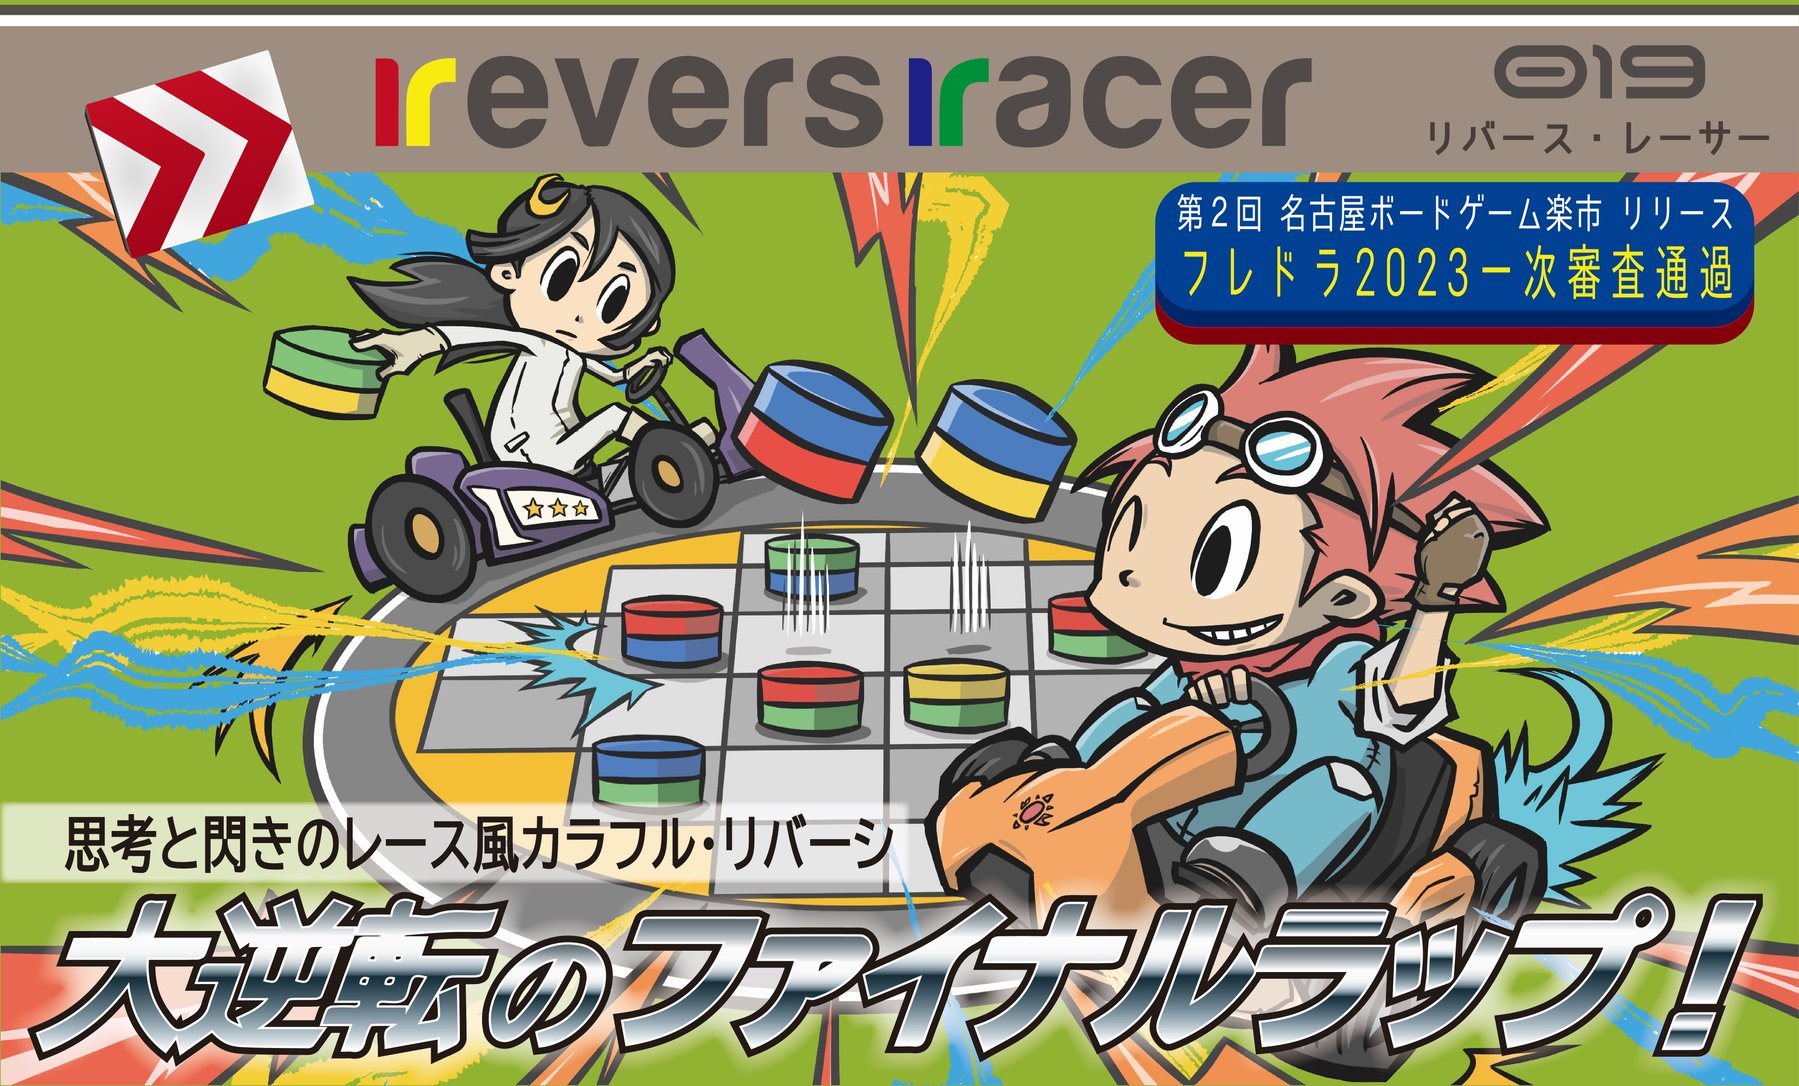 revers racer（リバースレーサー）